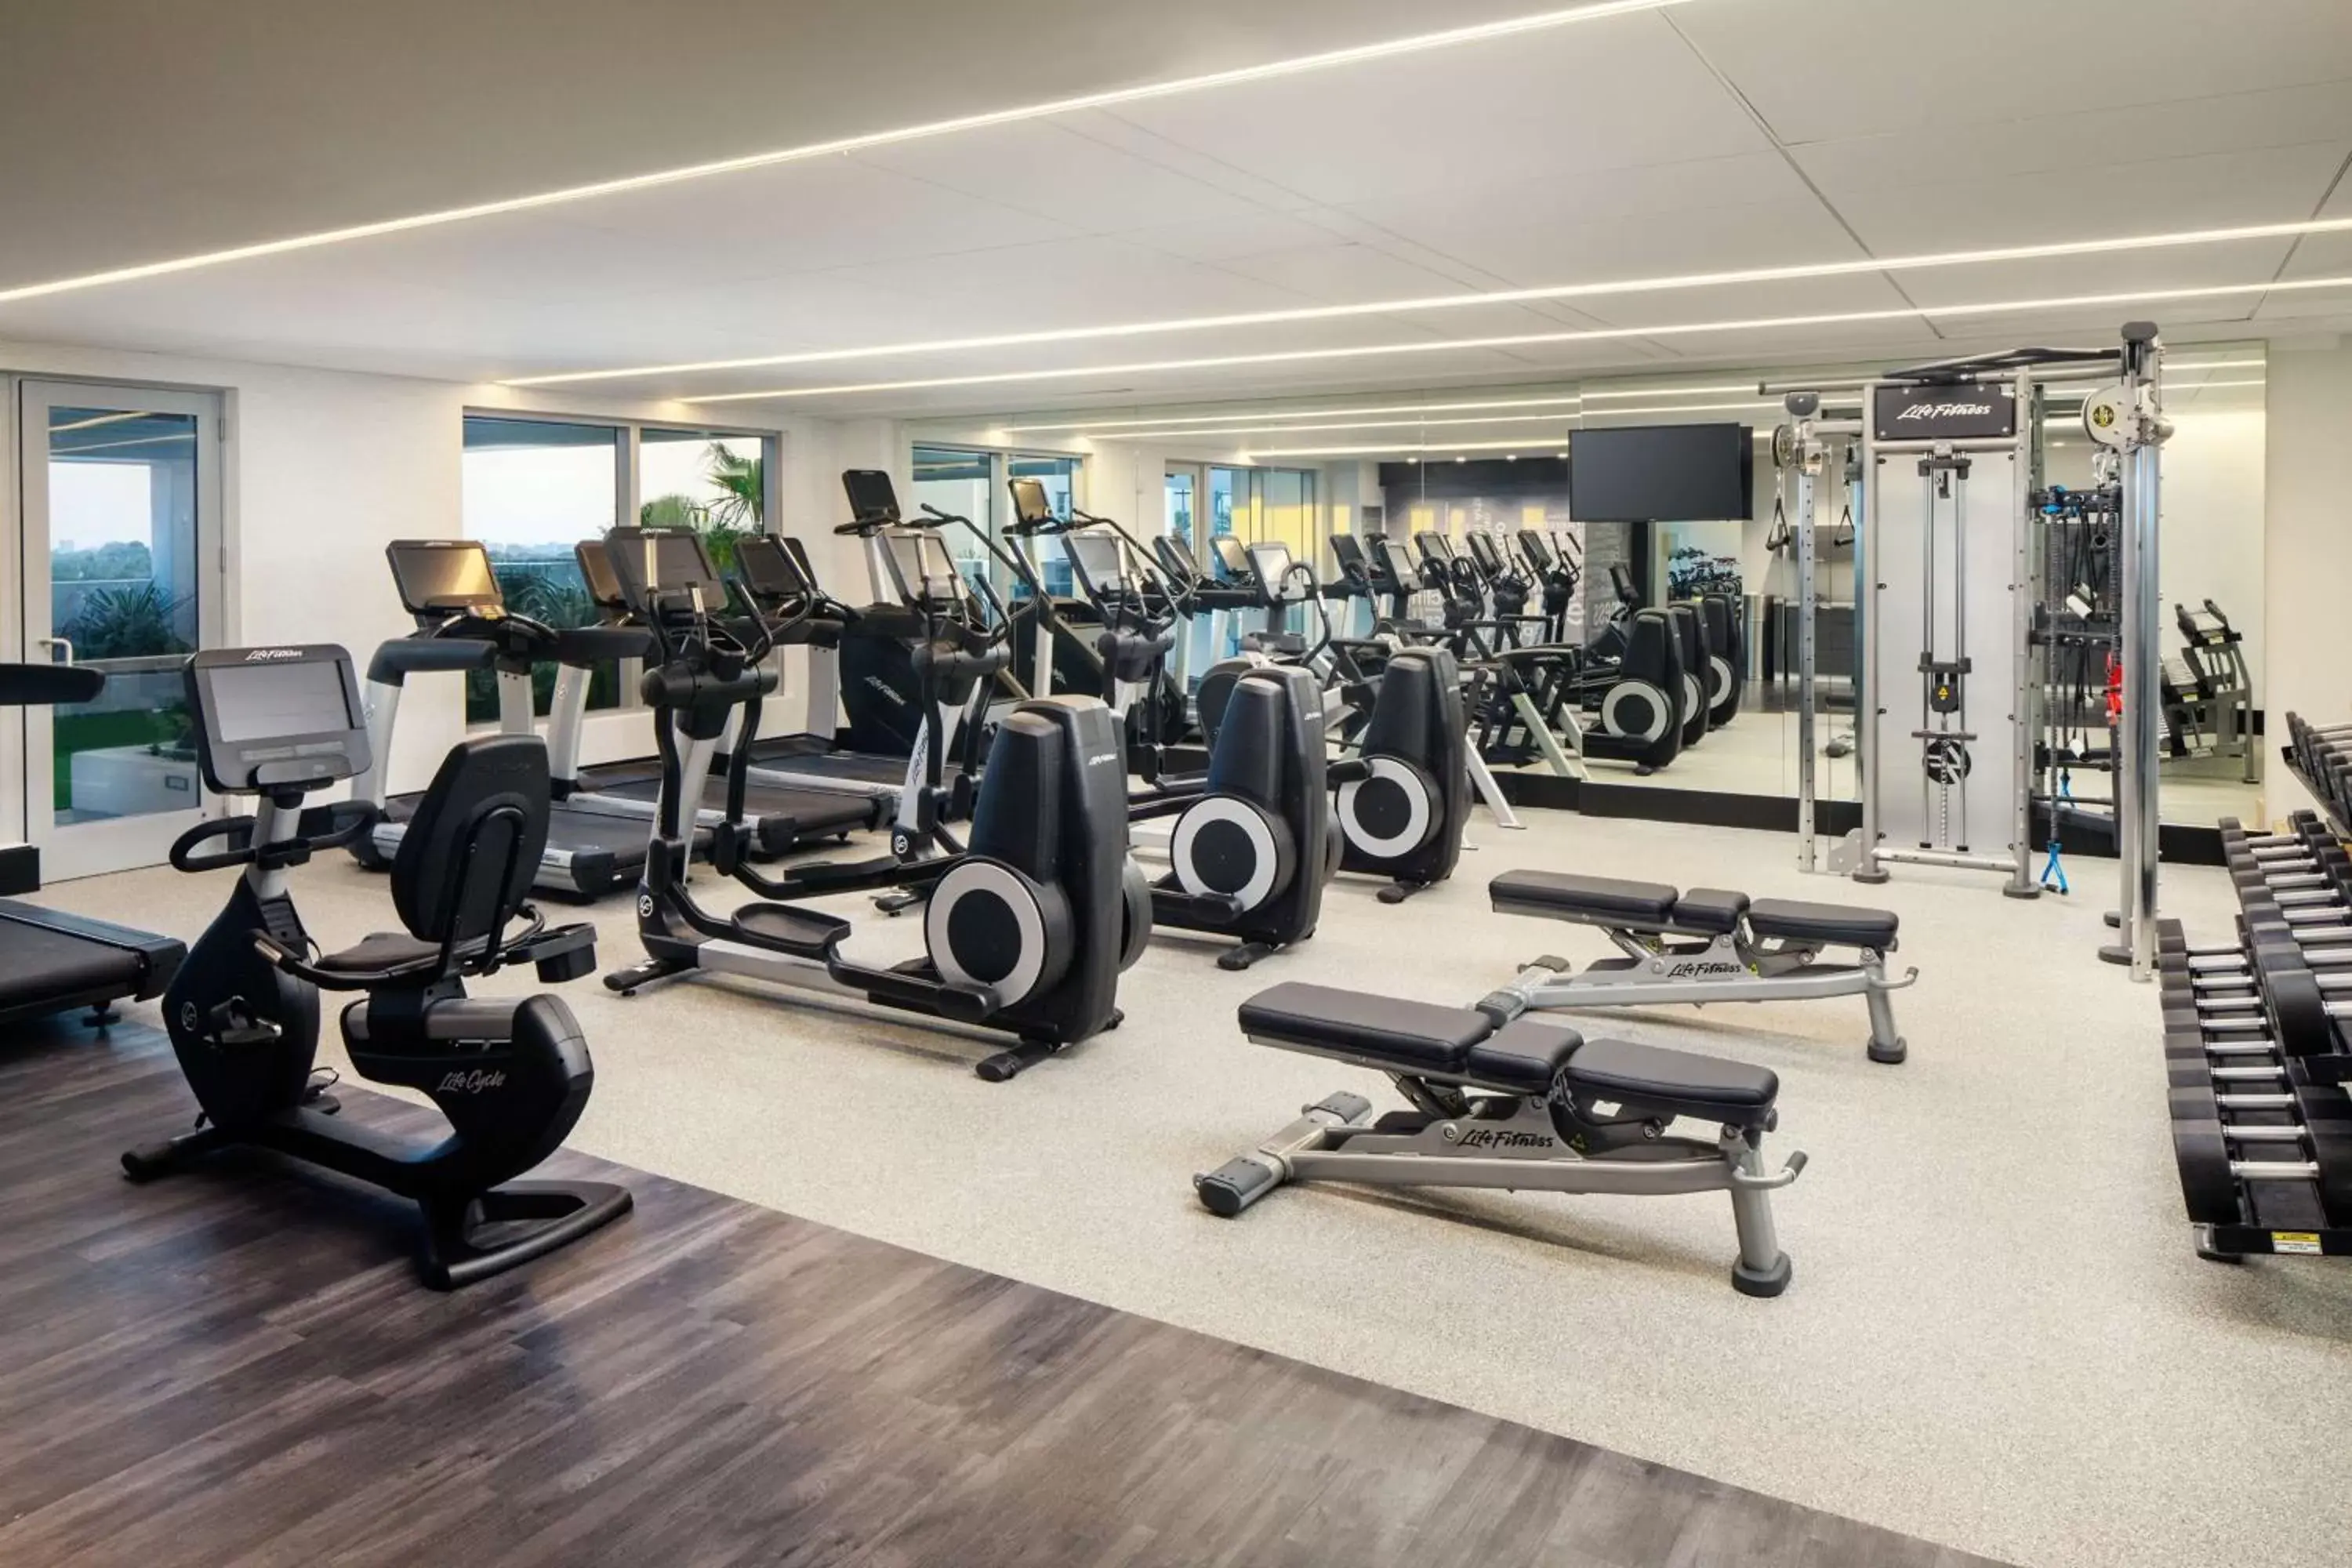 Fitness centre/facilities, Fitness Center/Facilities in Hilton Aventura Miami